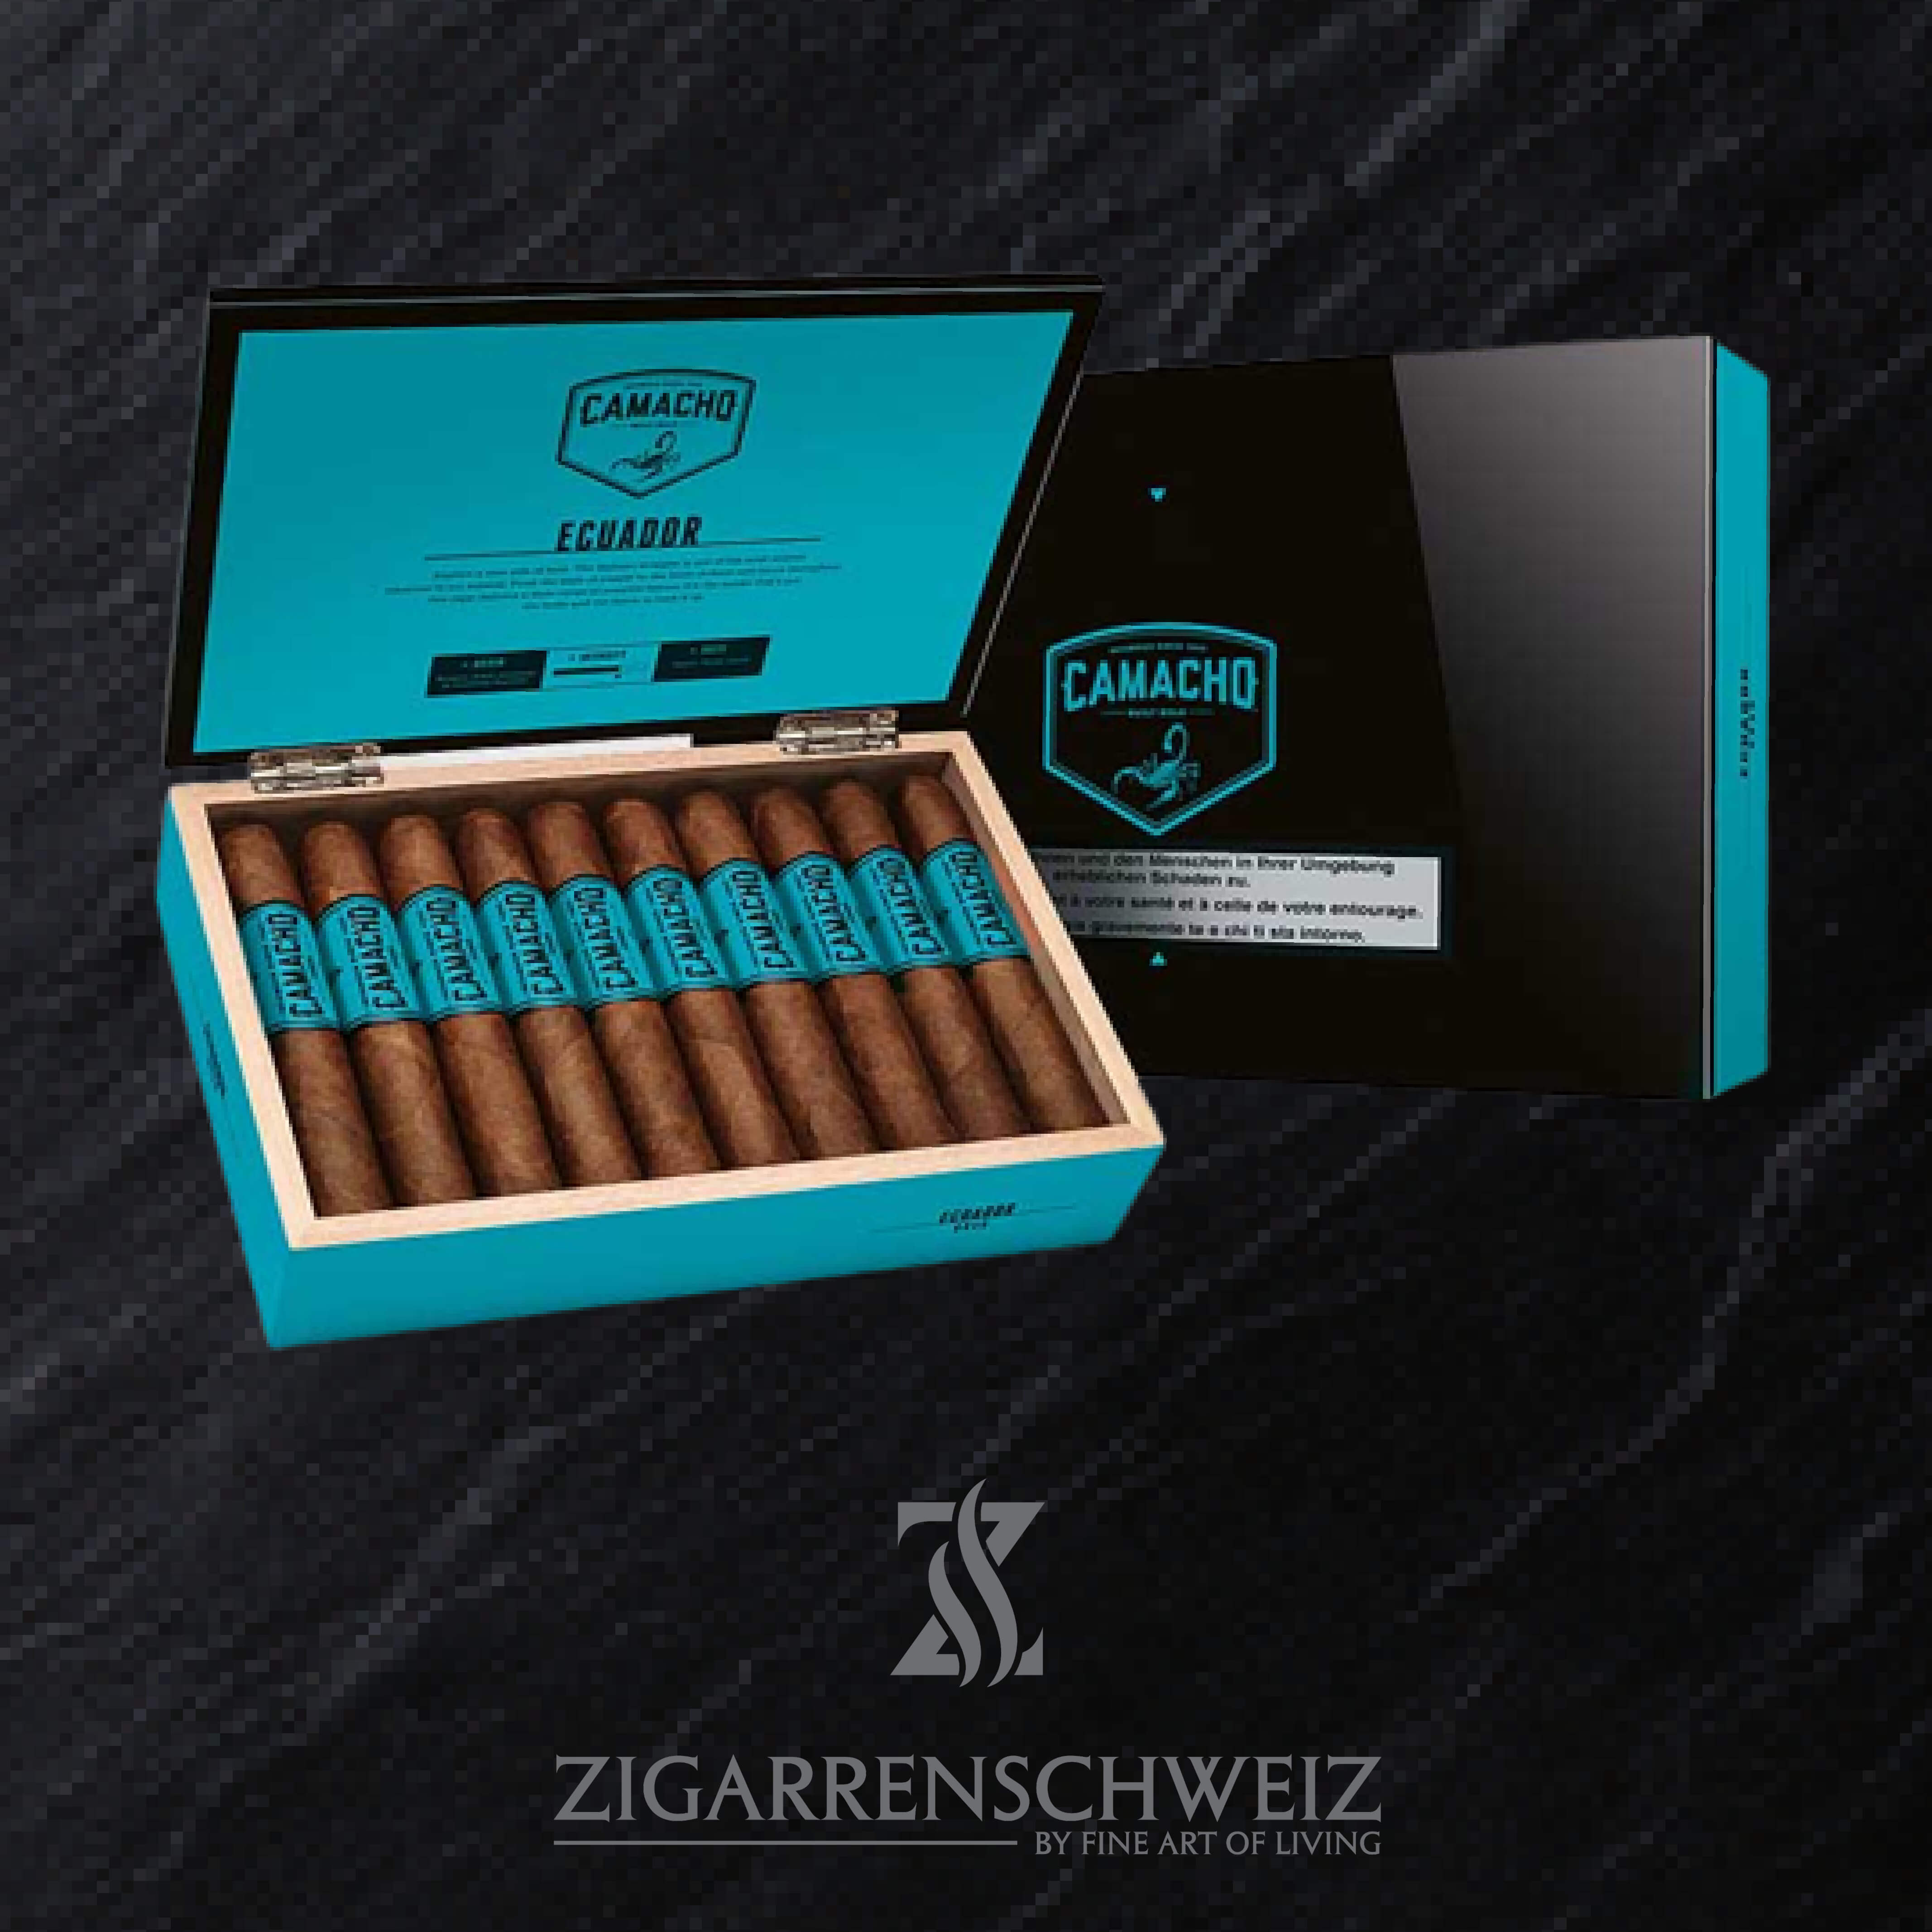 Camacho Ecuador Gordo Zigarren Kiste